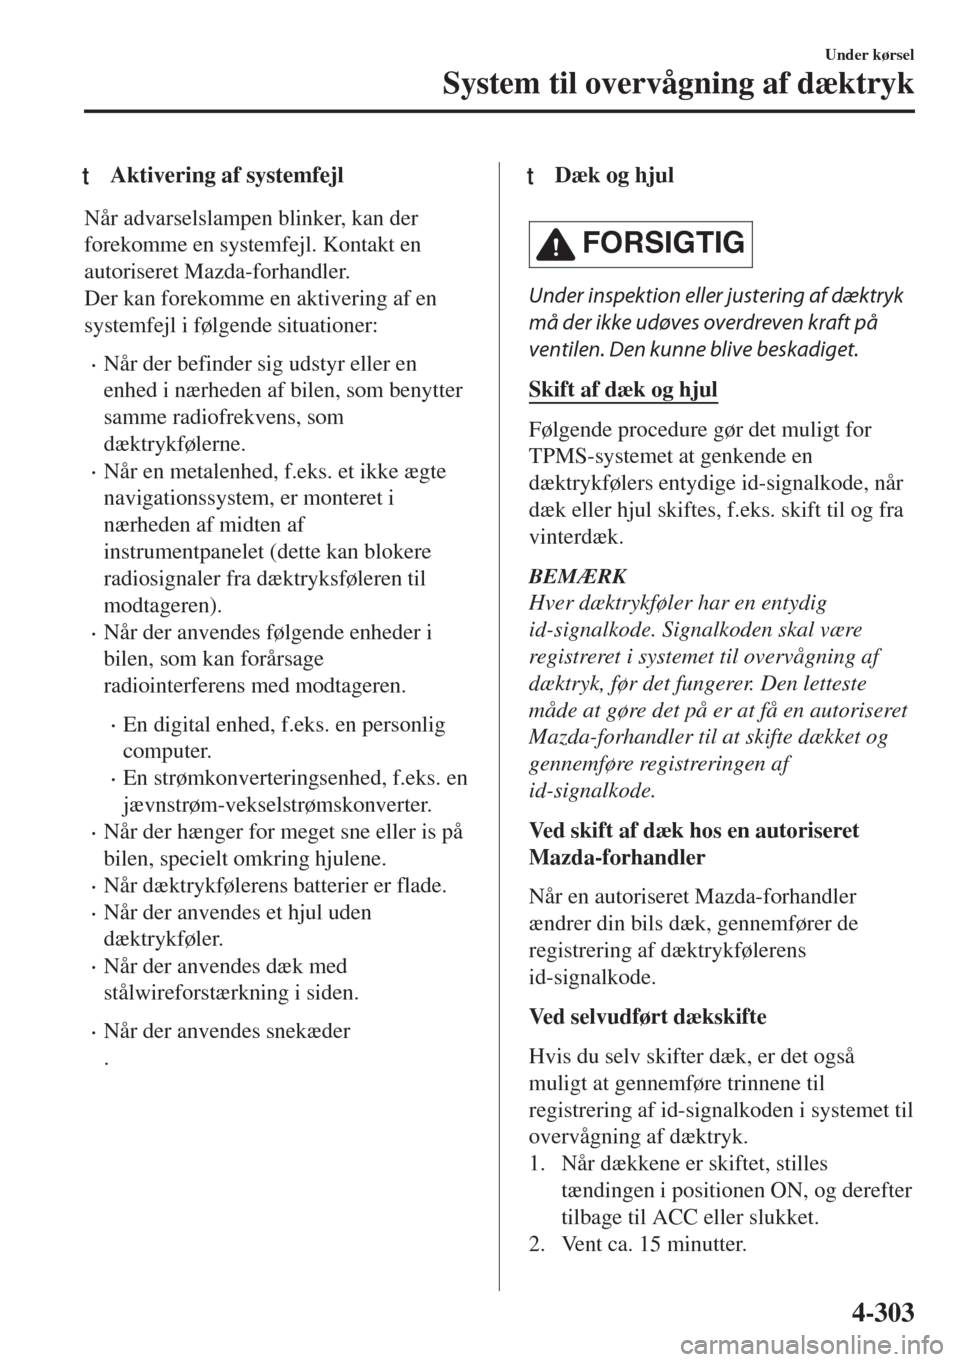 MAZDA MODEL 6 2018  Instruktionsbog (in Danish) tAktivering af systemfejl
Når advarselslampen blinker, kan der
forekomme en systemfejl. Kontakt en
autoriseret Mazda-forhandler.
Der kan forekomme en aktivering af en
systemfejl i følgende situation